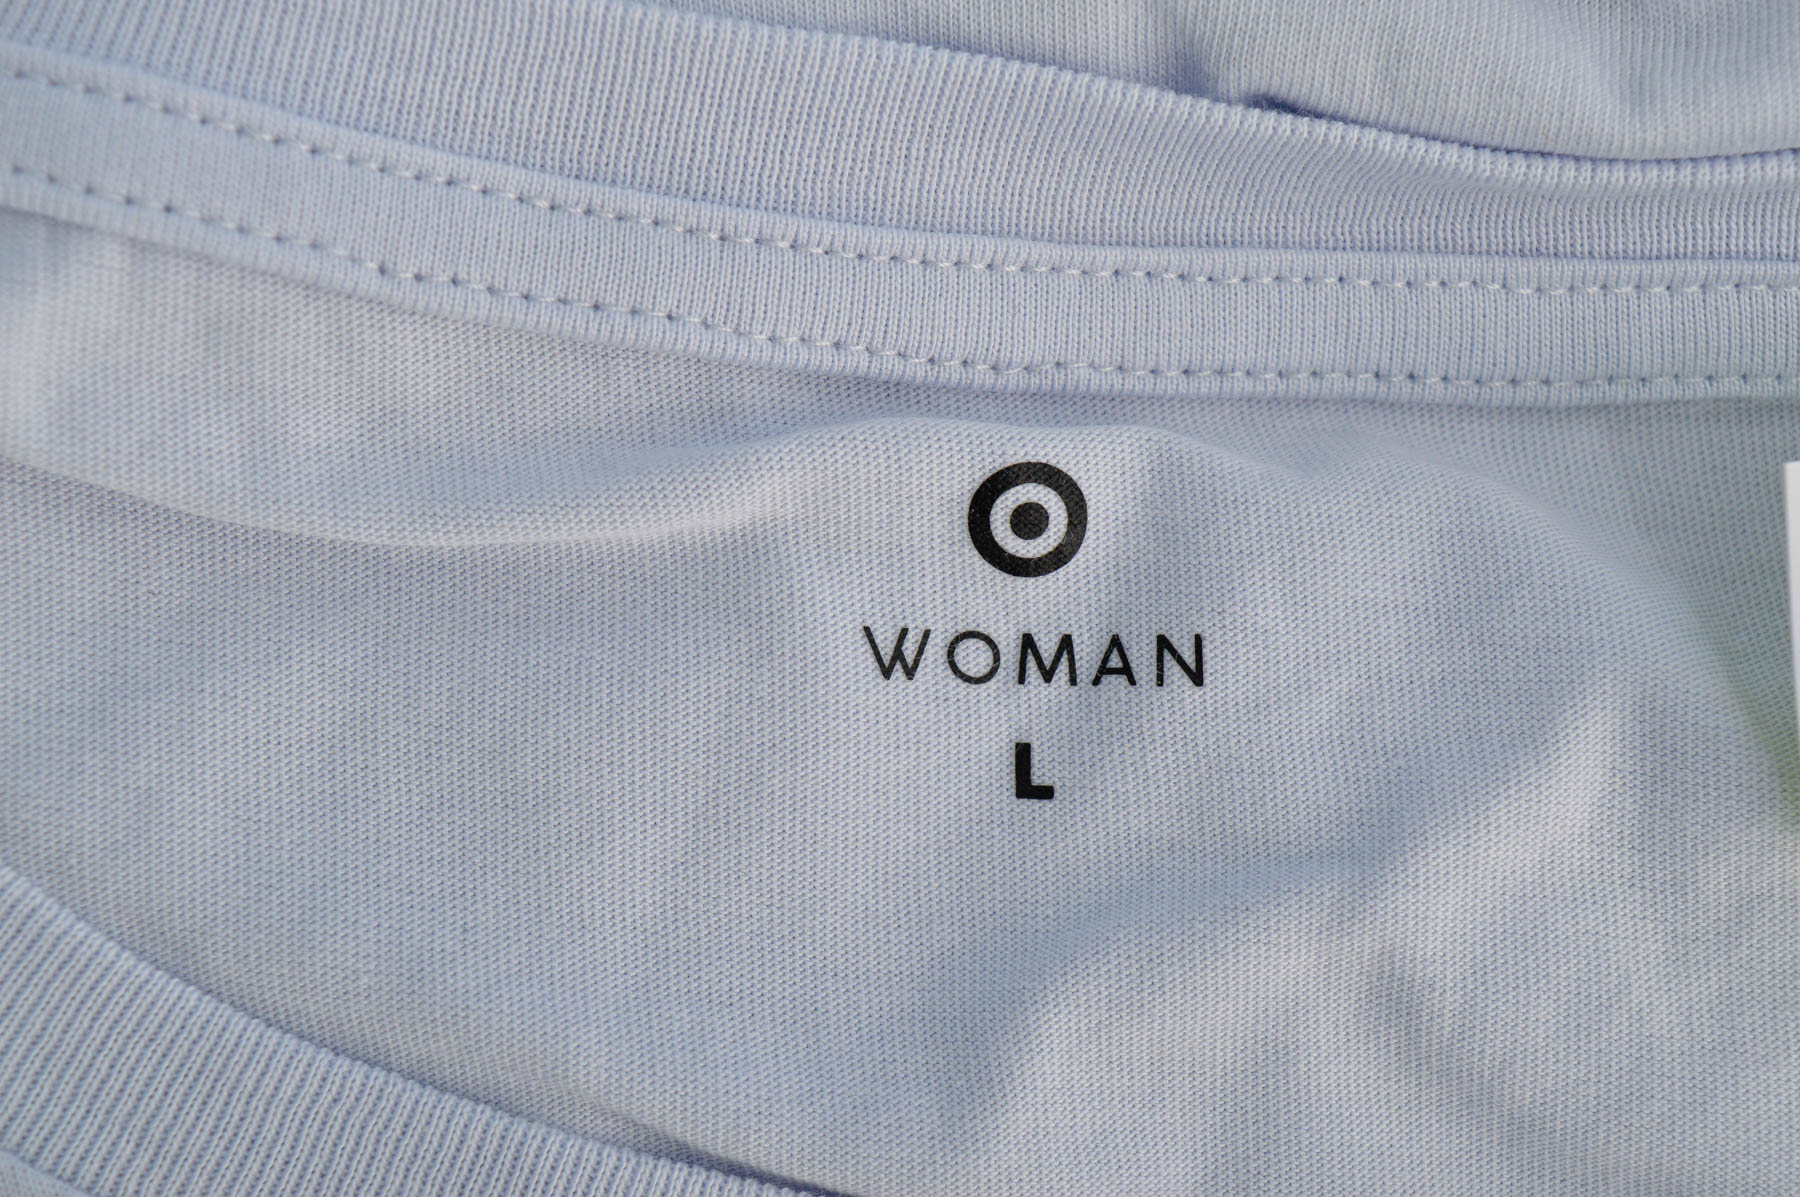 Women's t-shirt - Target - 2